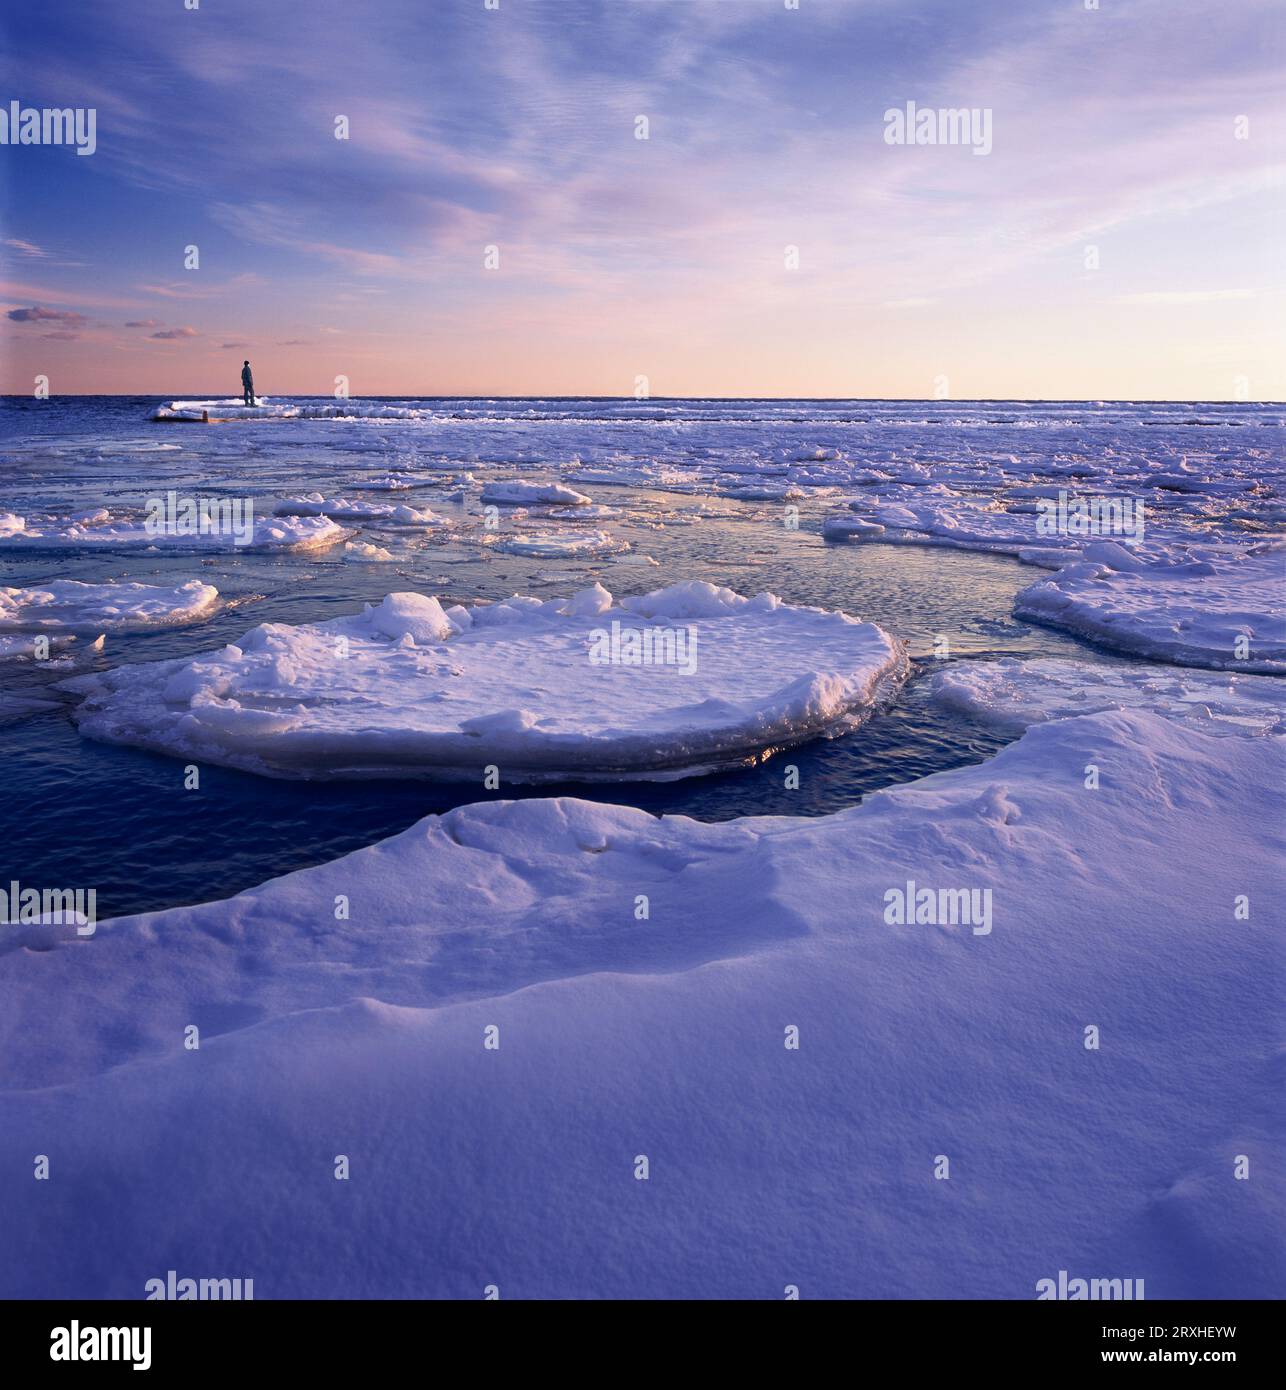 Die Person steht am Rande einer Eisformation im Ozean und blickt auf die weite Meereslandschaft und den Horizont Stockfoto